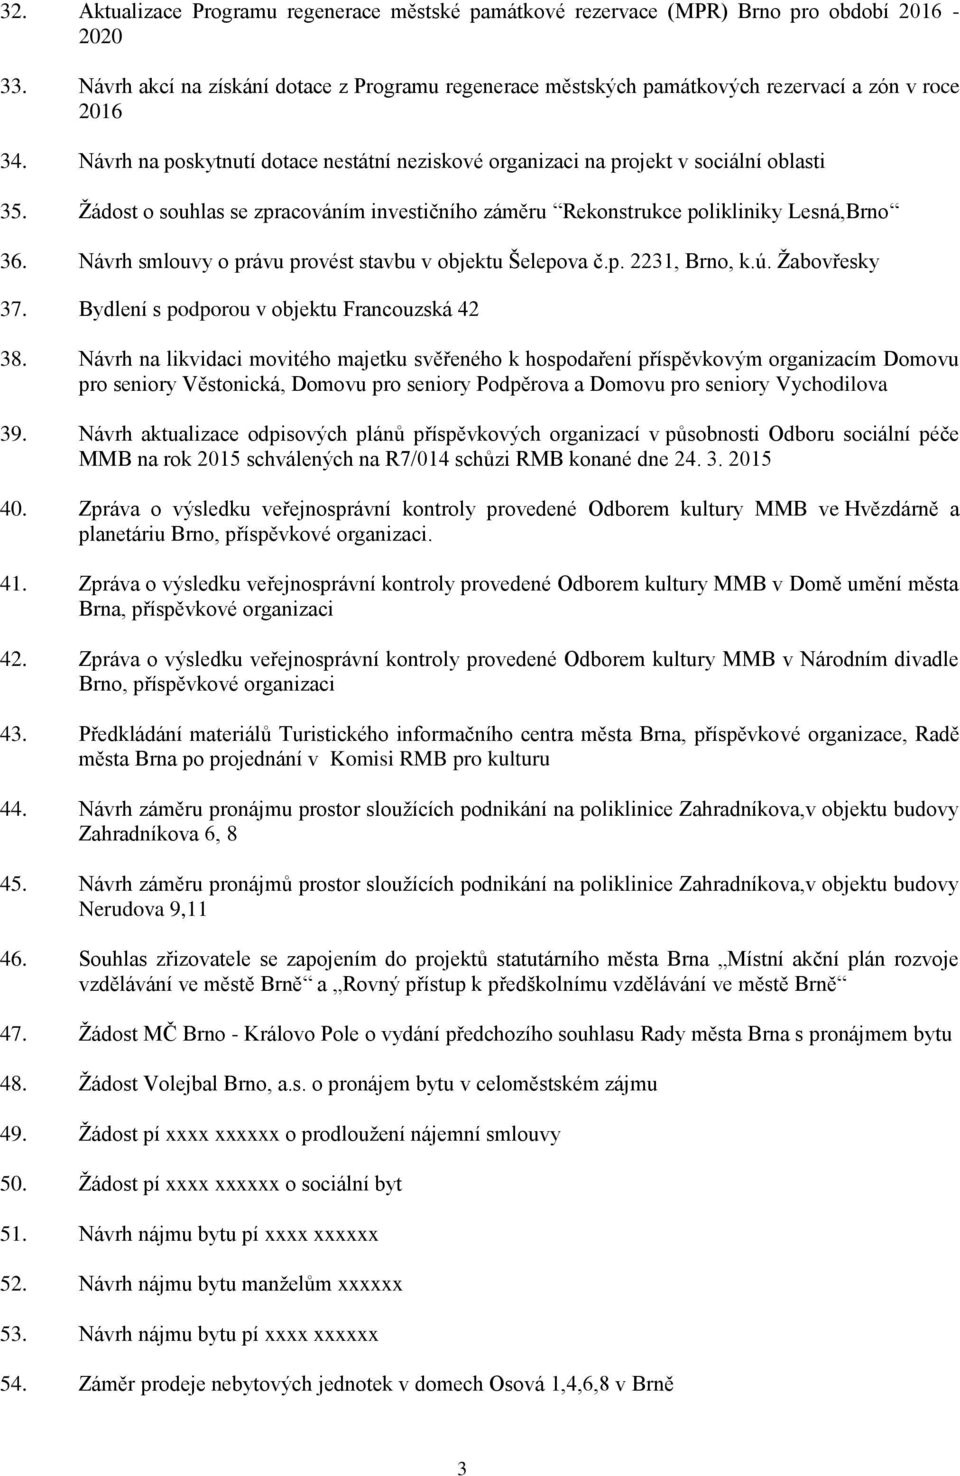 Žádost o souhlas se zpracováním investičního záměru Rekonstrukce polikliniky Lesná,Brno 36. Návrh smlouvy o právu provést stavbu v objektu Šelepova č.p. 2231, Brno, k.ú. Žabovřesky 37.